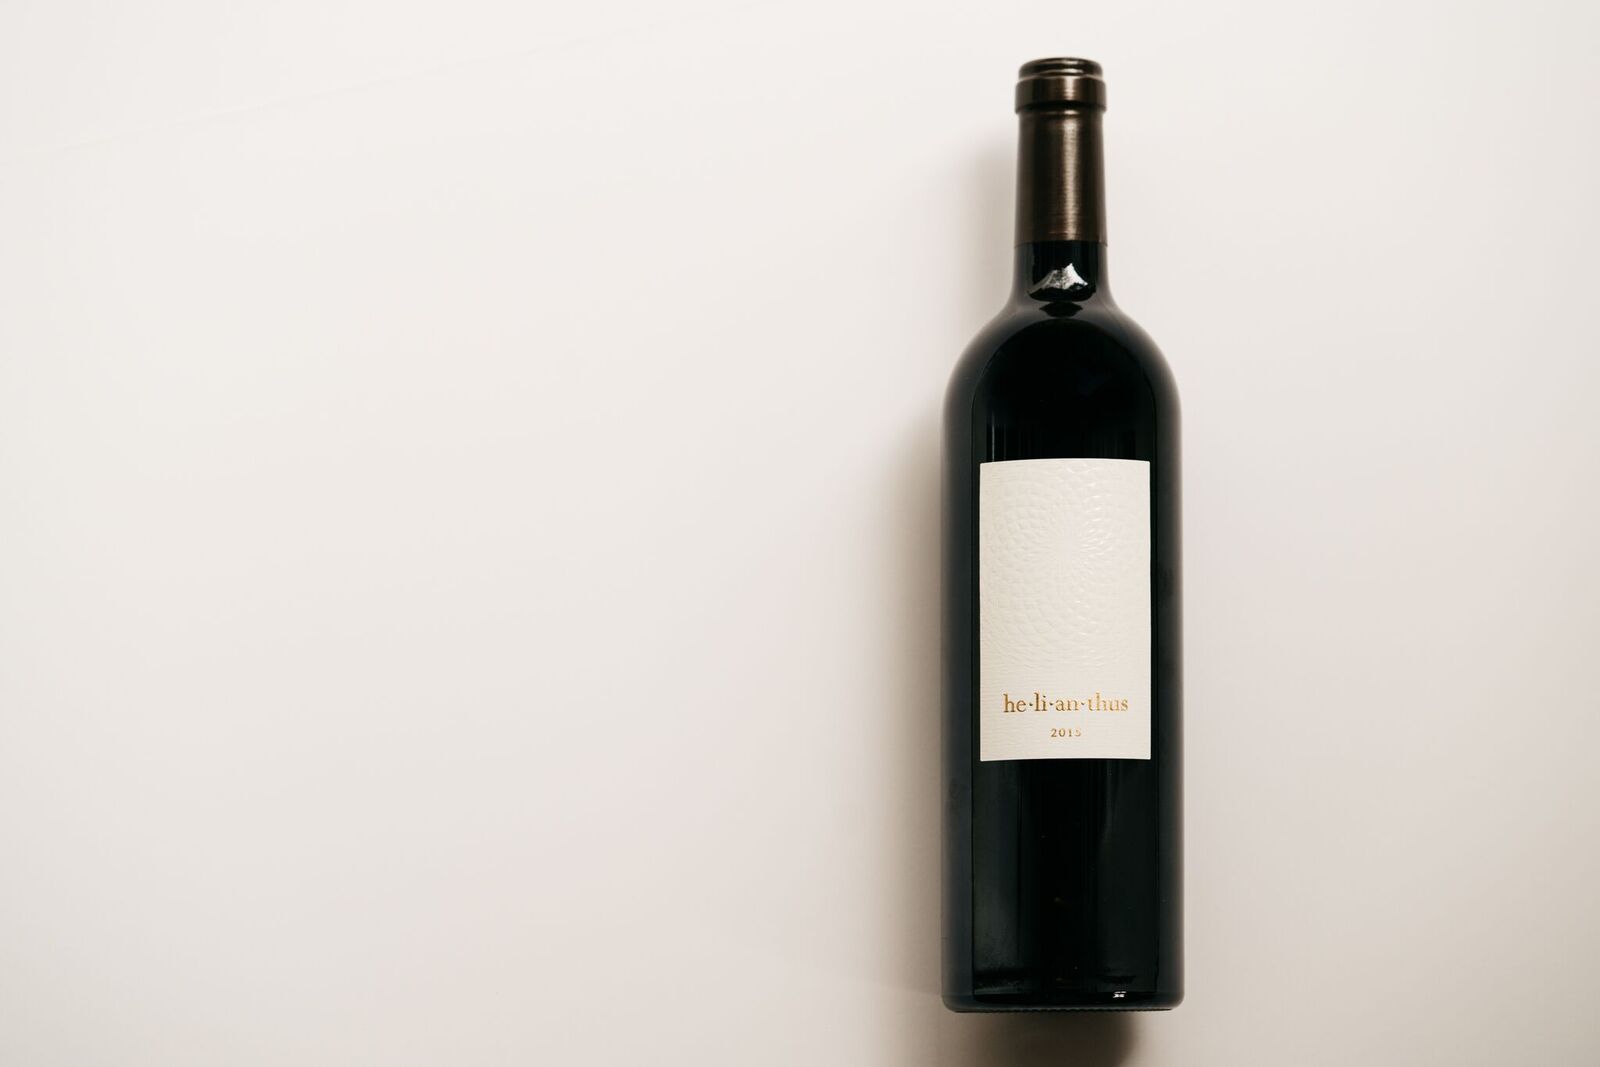 he-li-an-thus wine - bottle of 2015 red wine